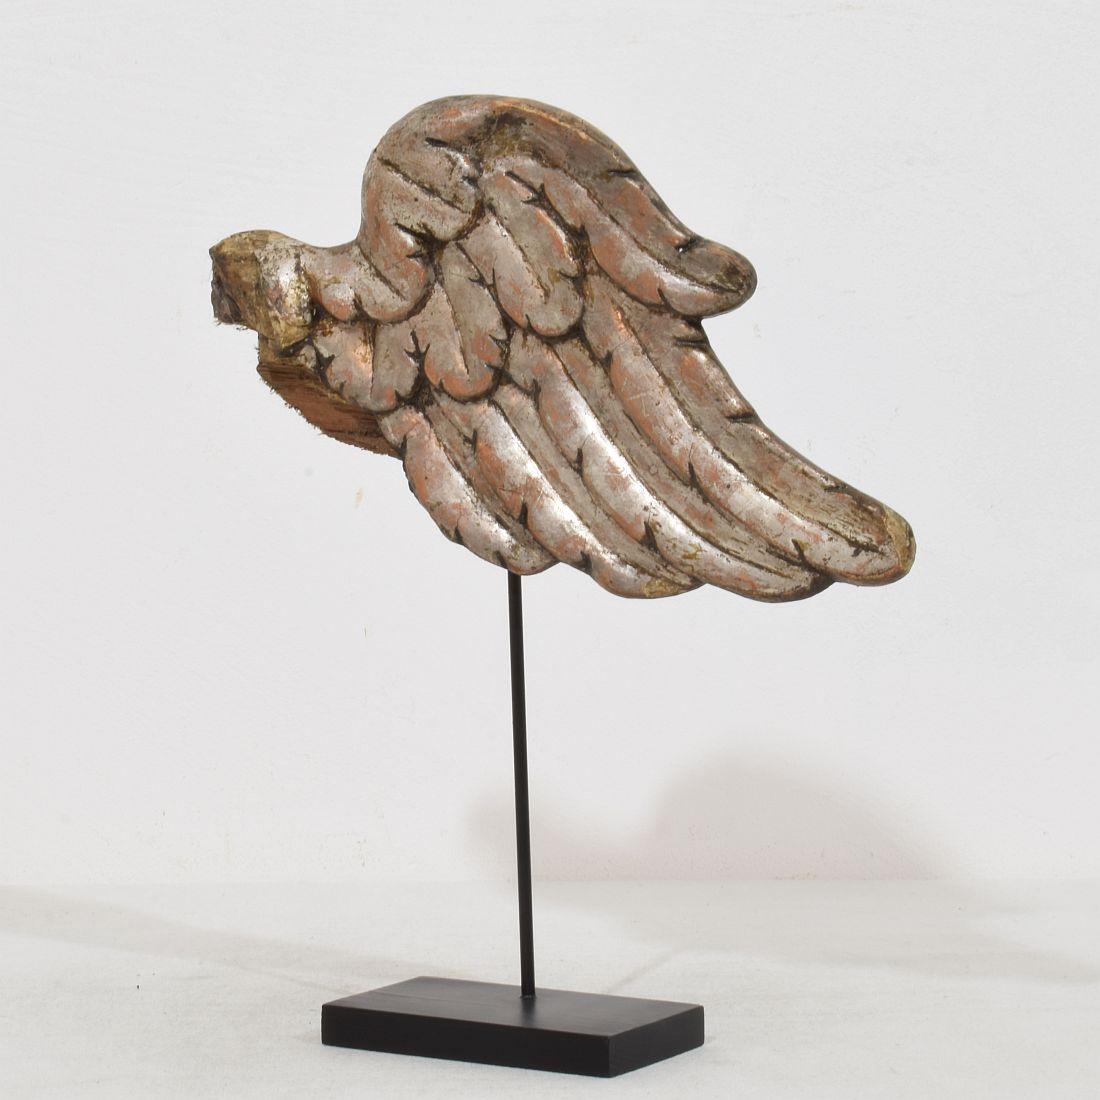 Schöner versilberter Barock-Engel-Flügel. Seltener und sehr dekorativer Gegenstand auf einem Holzsockel, Italien, um 1750. Verwittert. Die Maße sind inklusive des Holzsockels.
H:27,5cm  B:24cm T:5,5cm 